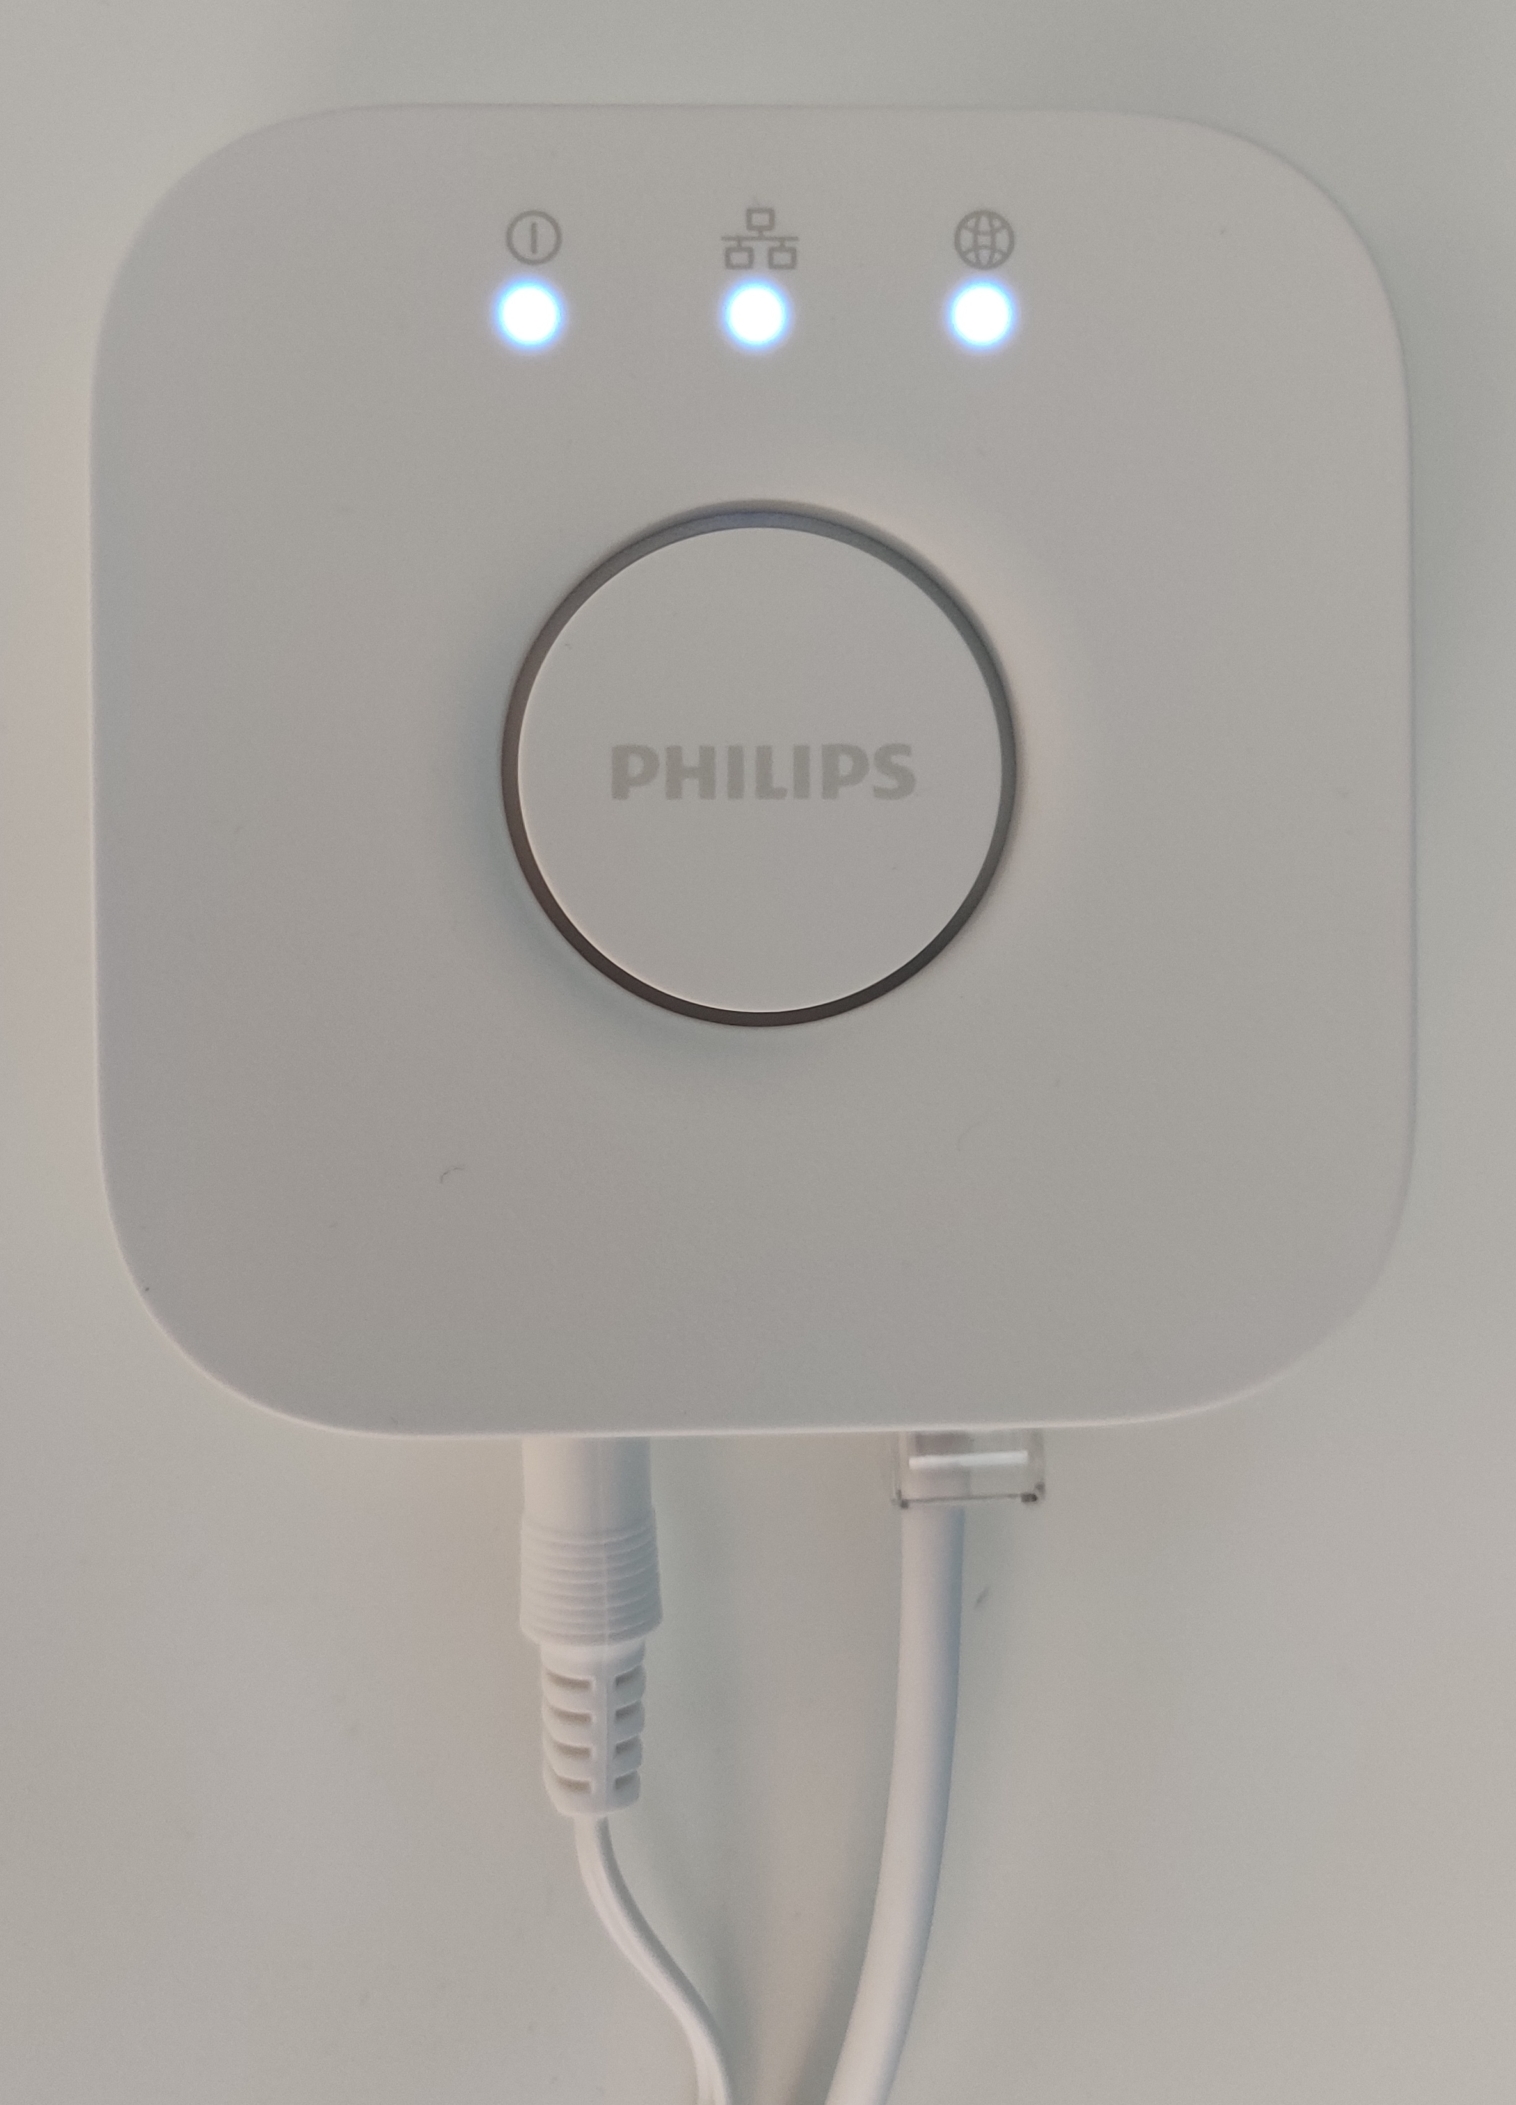 Vos équipements Philips Hue compatibles avec Jeedom –